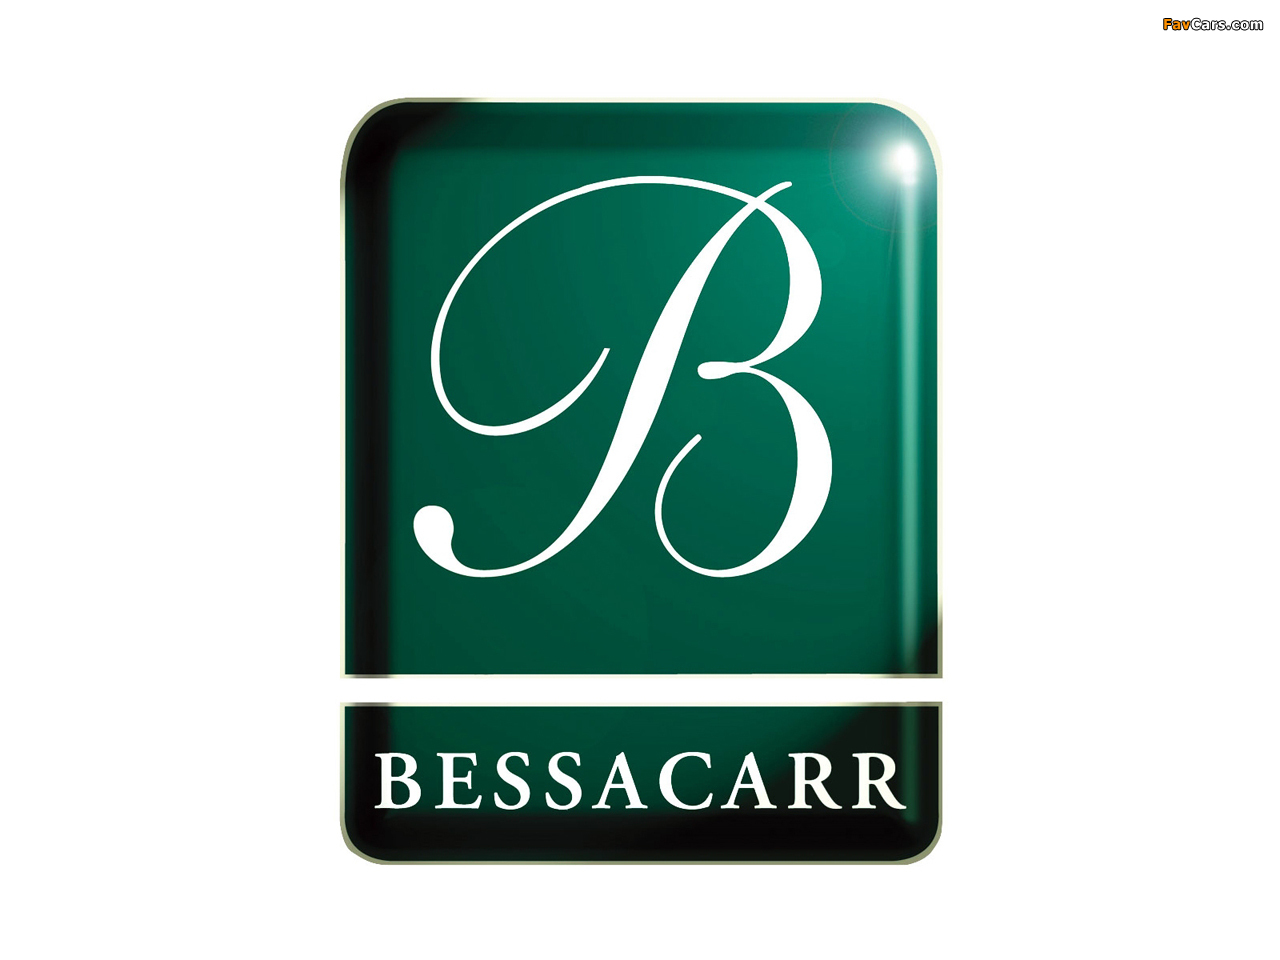 Photos of Bessacarr (1280 x 960)